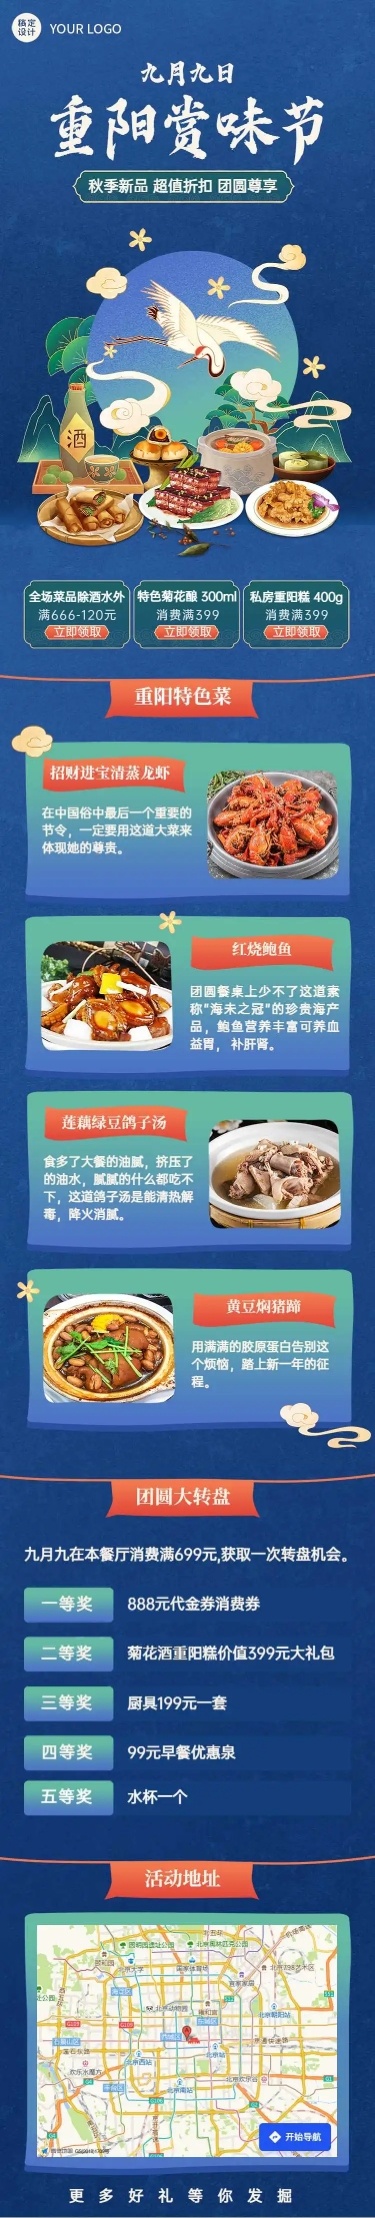 H5长页手绘中国风重阳节美食促销活动